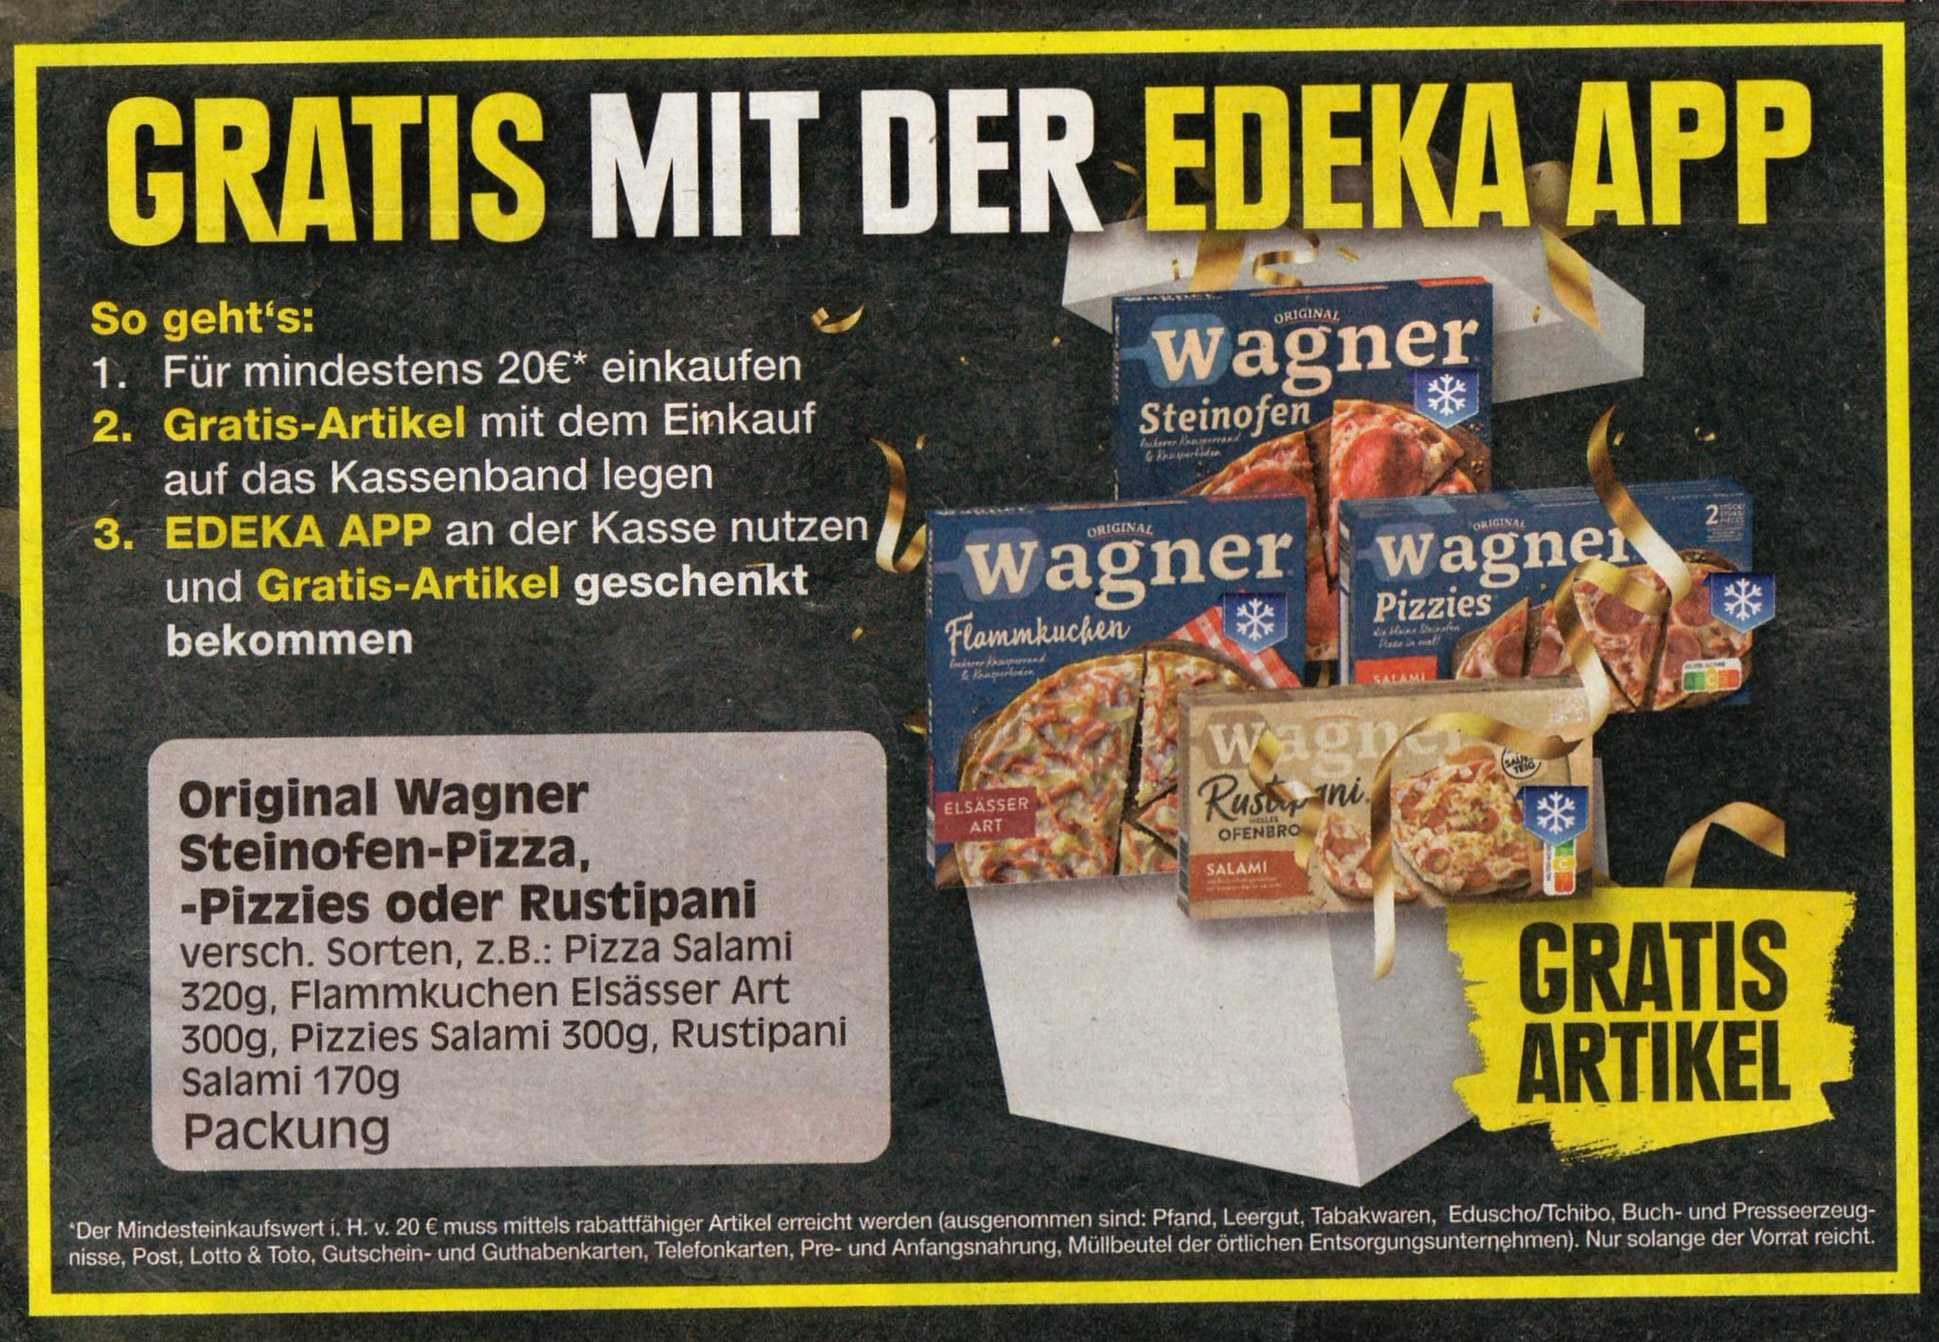 Original Wagner Artikel gratis Edeka App Region Minden-Hannover der in mit der (09.10